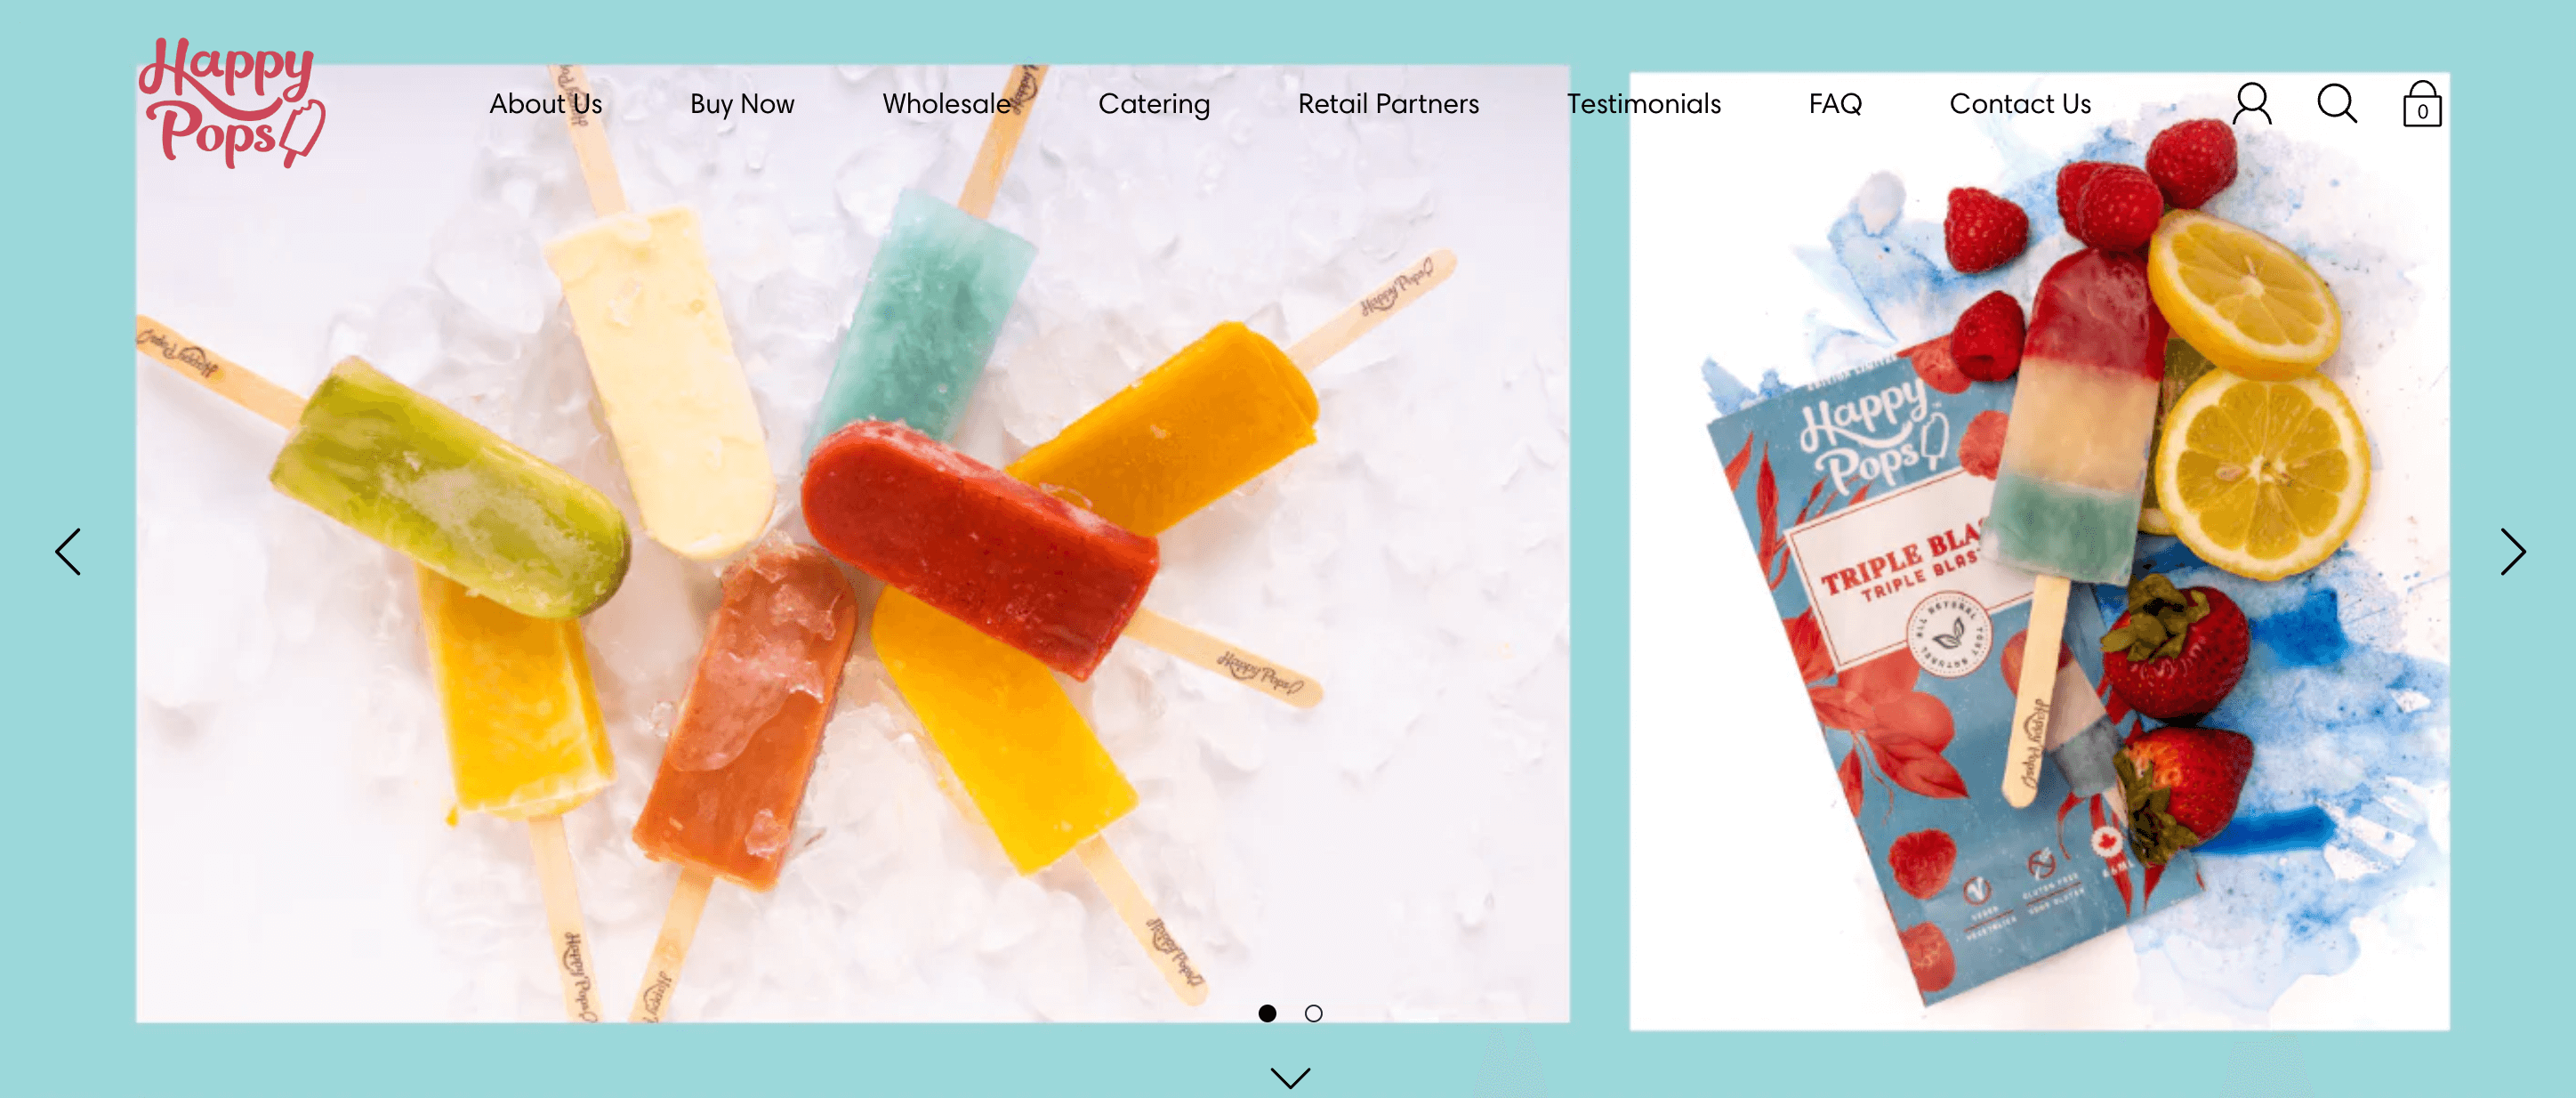 Happy Pops 主页的屏幕截图显示了其彩色冰棒的图像。